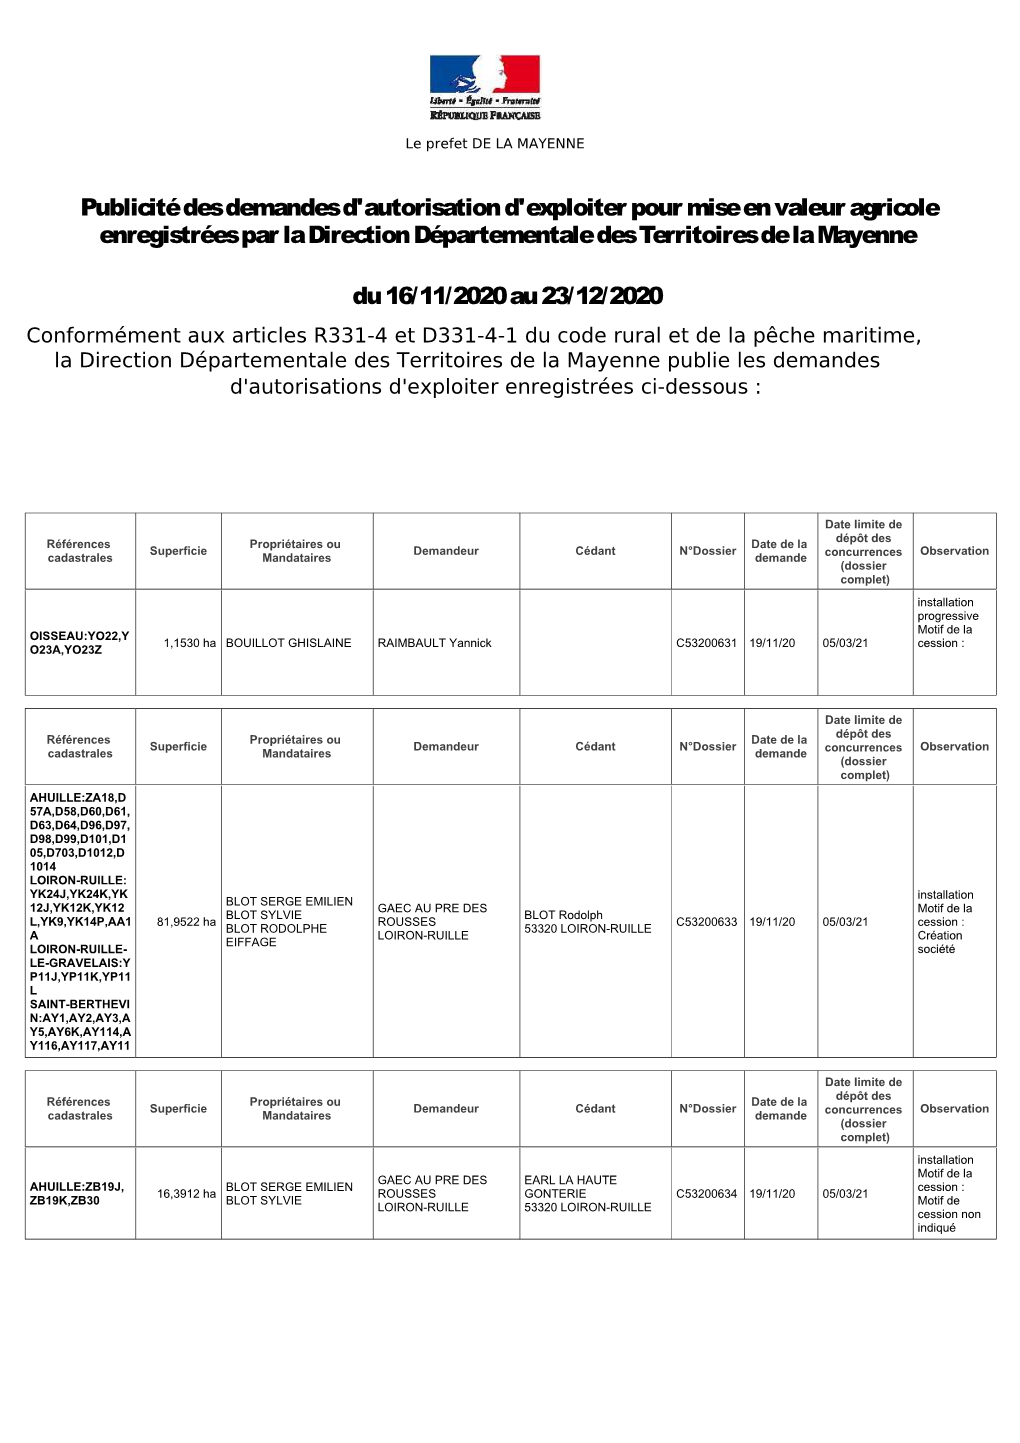 Publicité Des Demandes D'autorisation D'exploiter Pour Mise En Valeur Agricole Enregistrées Par La Direction Départementale Des Territoires De La Mayenne